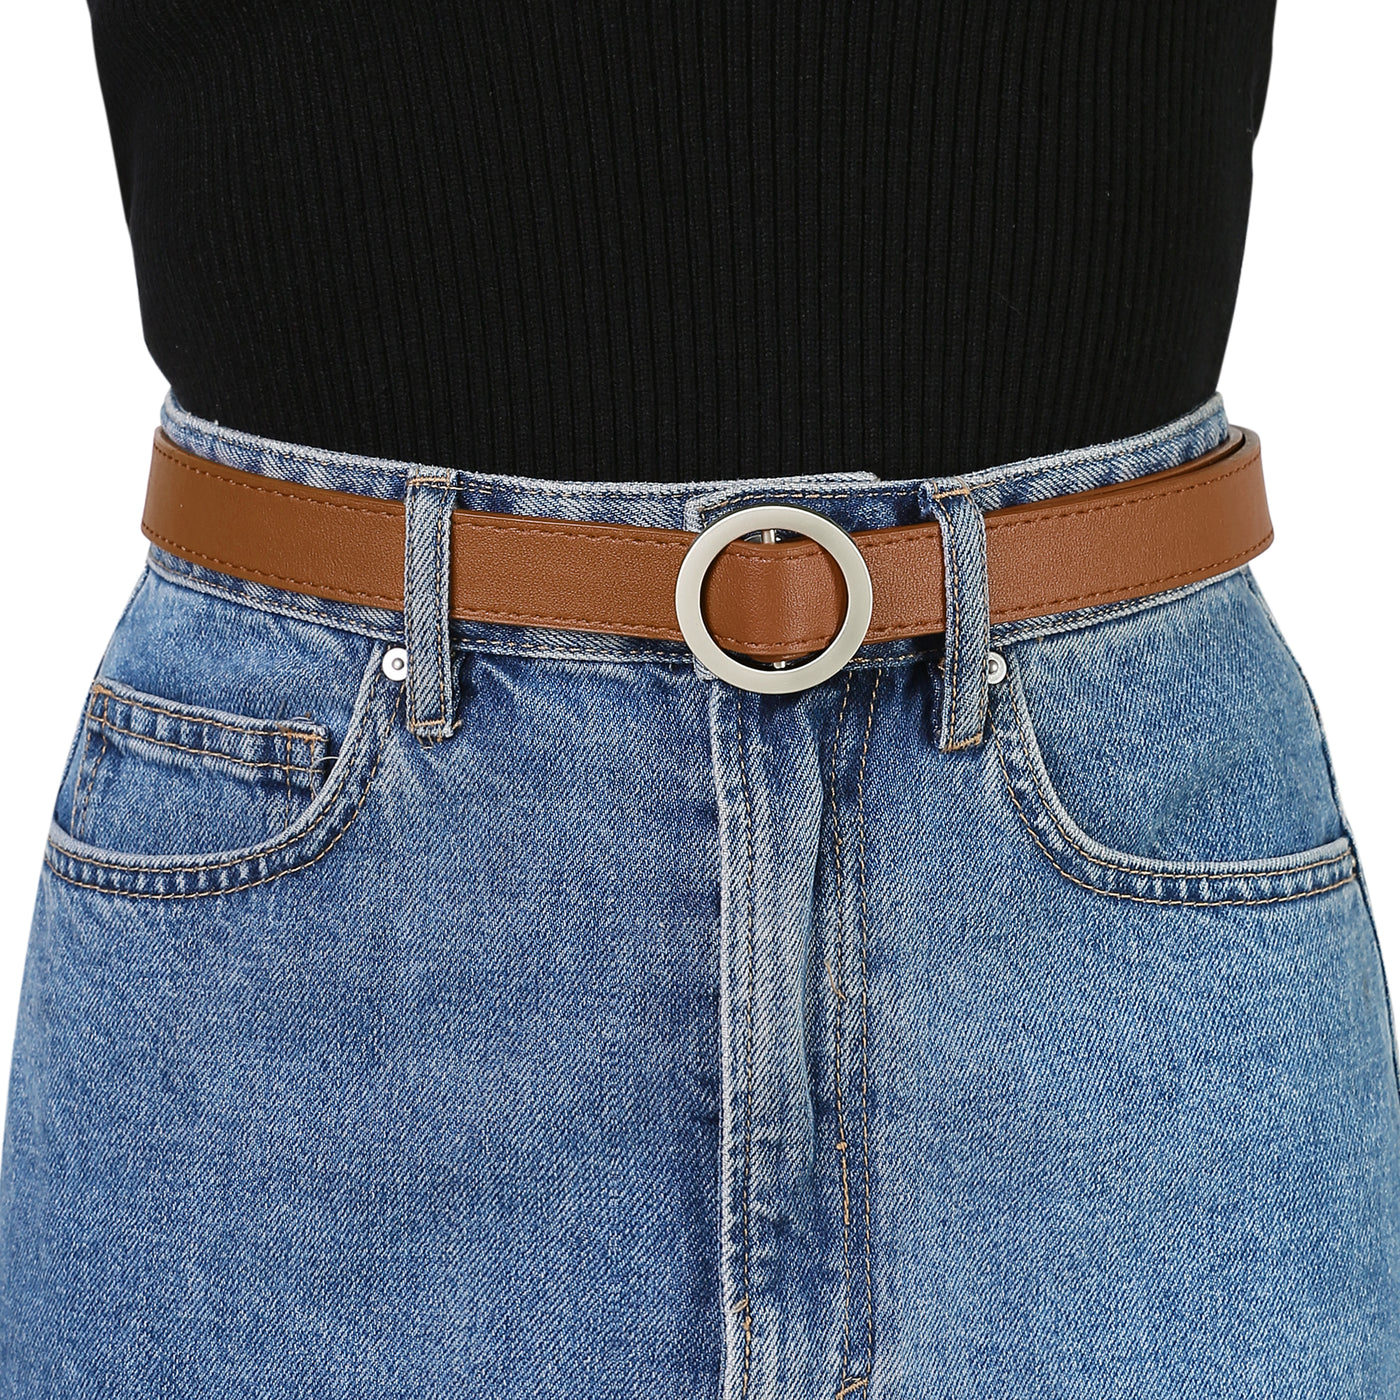 Allegra K O Ring Metal Buckle Thin Nonporous Jeans Dress Waist Belt